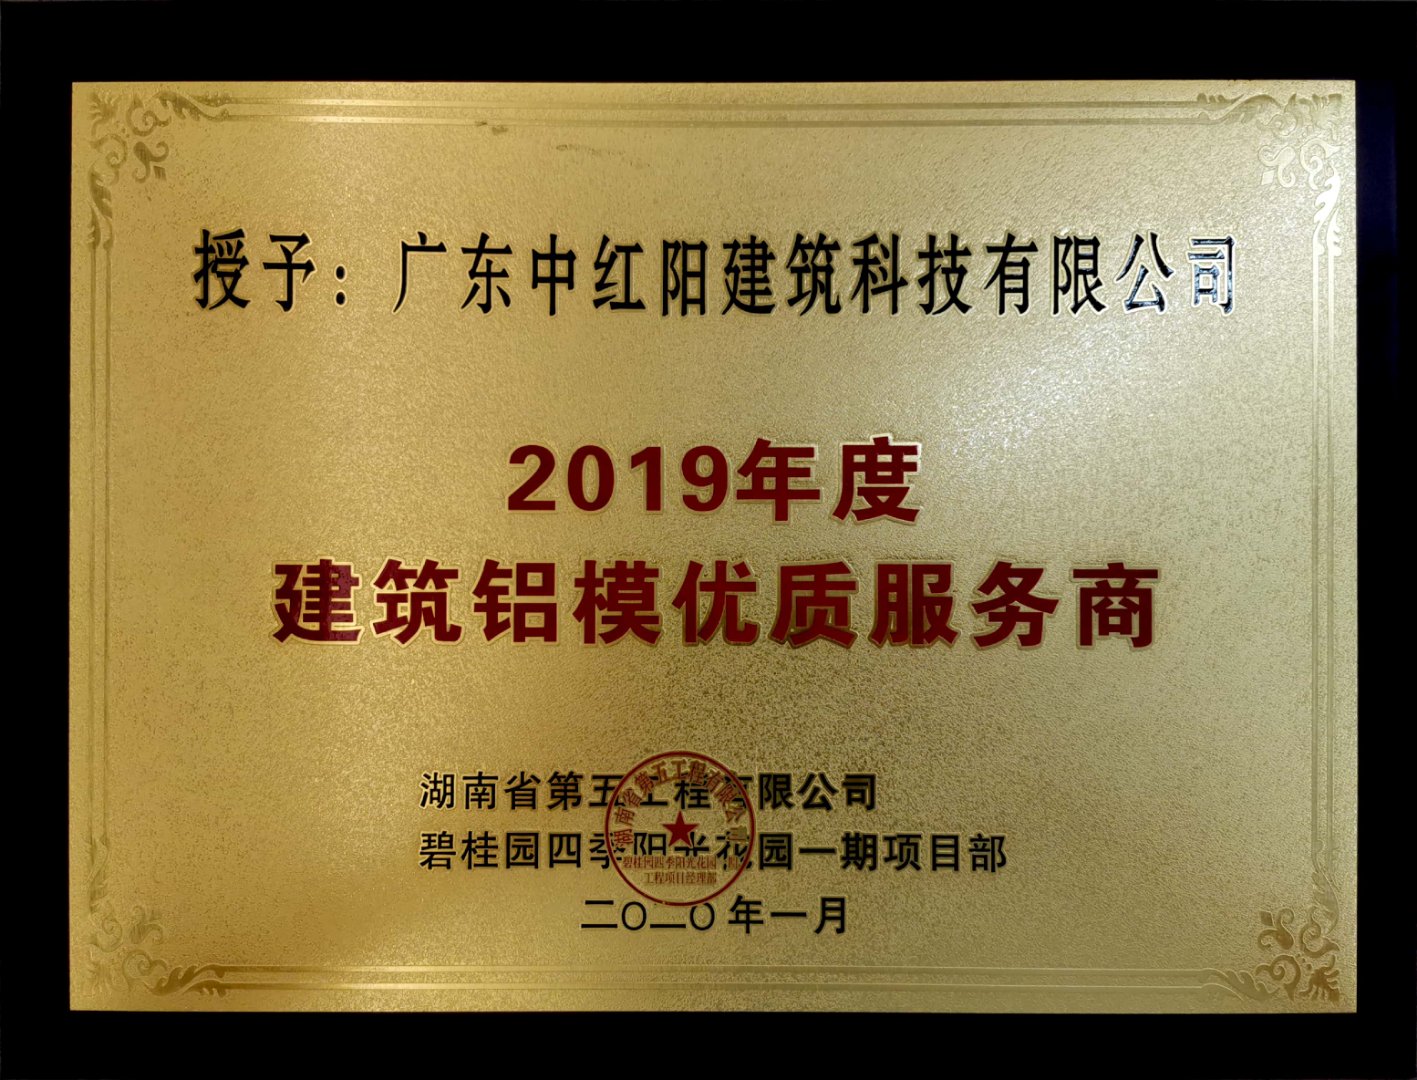 2019年度建筑铝模优质供应商 ( 碧桂园四季阳光花园 )